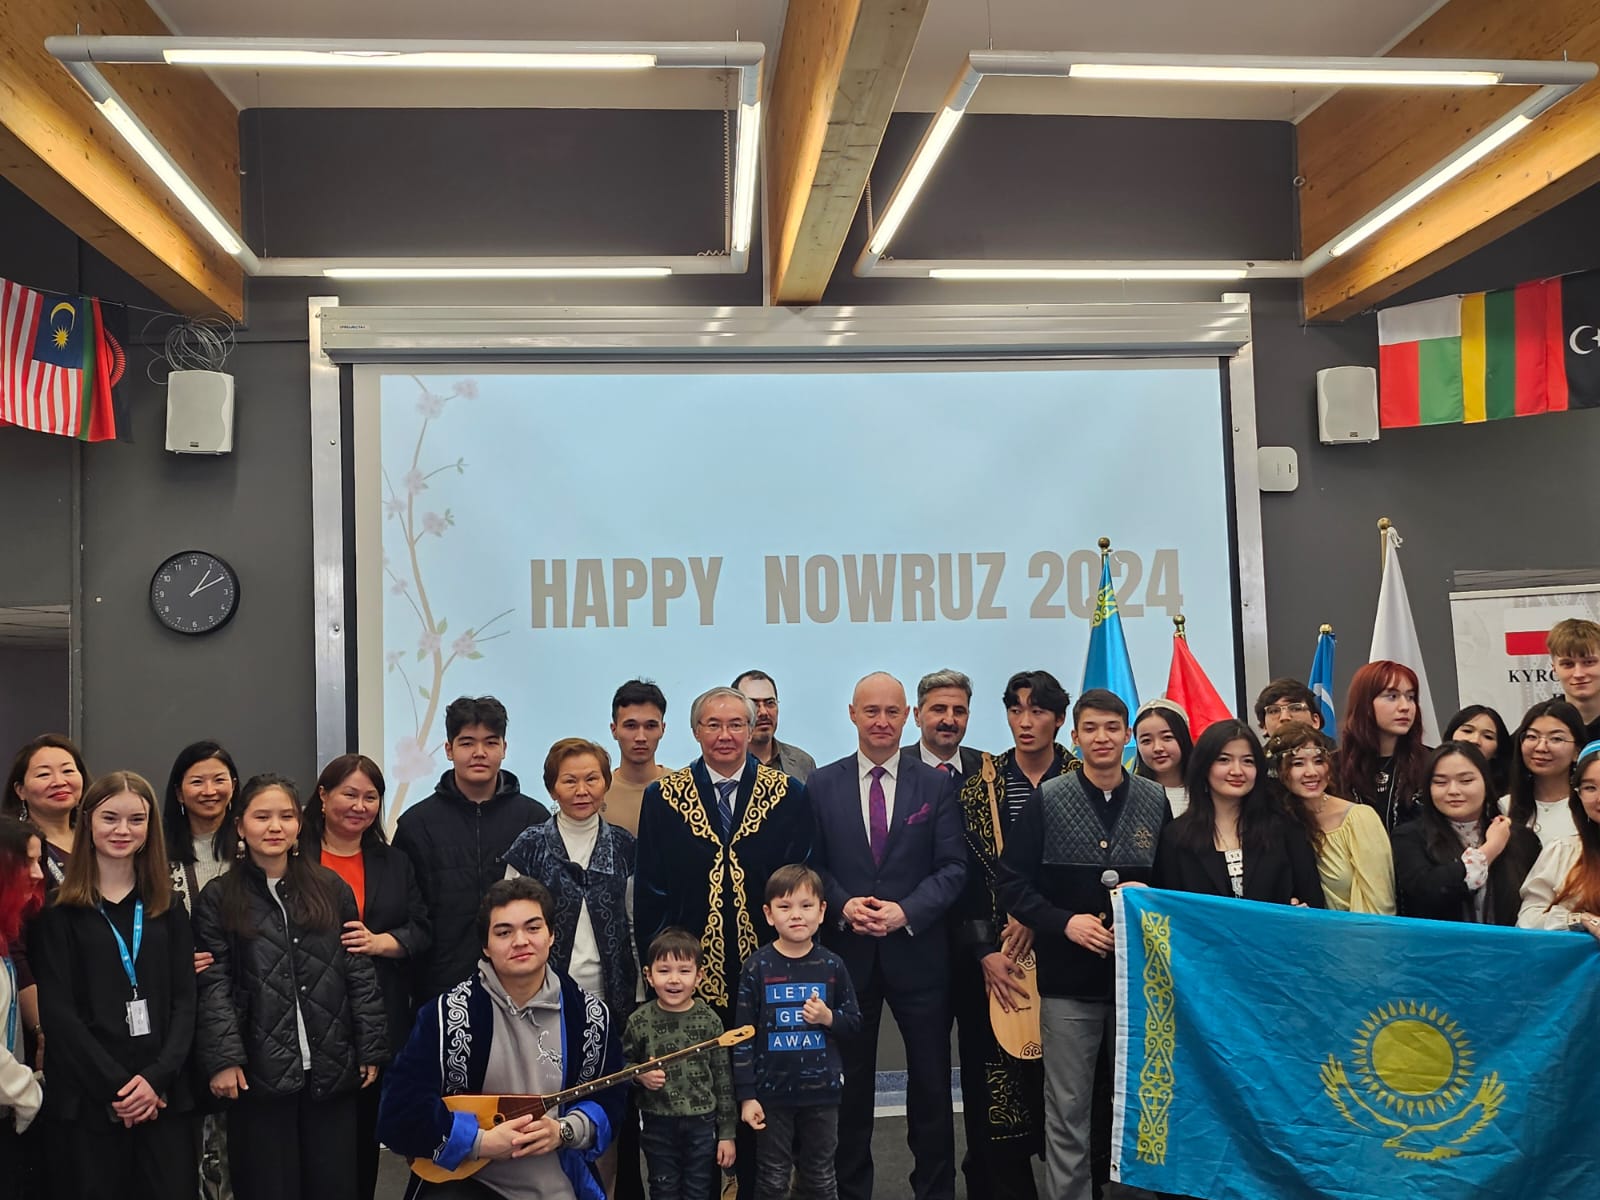 Nauryz was Celebrated in Warsaw